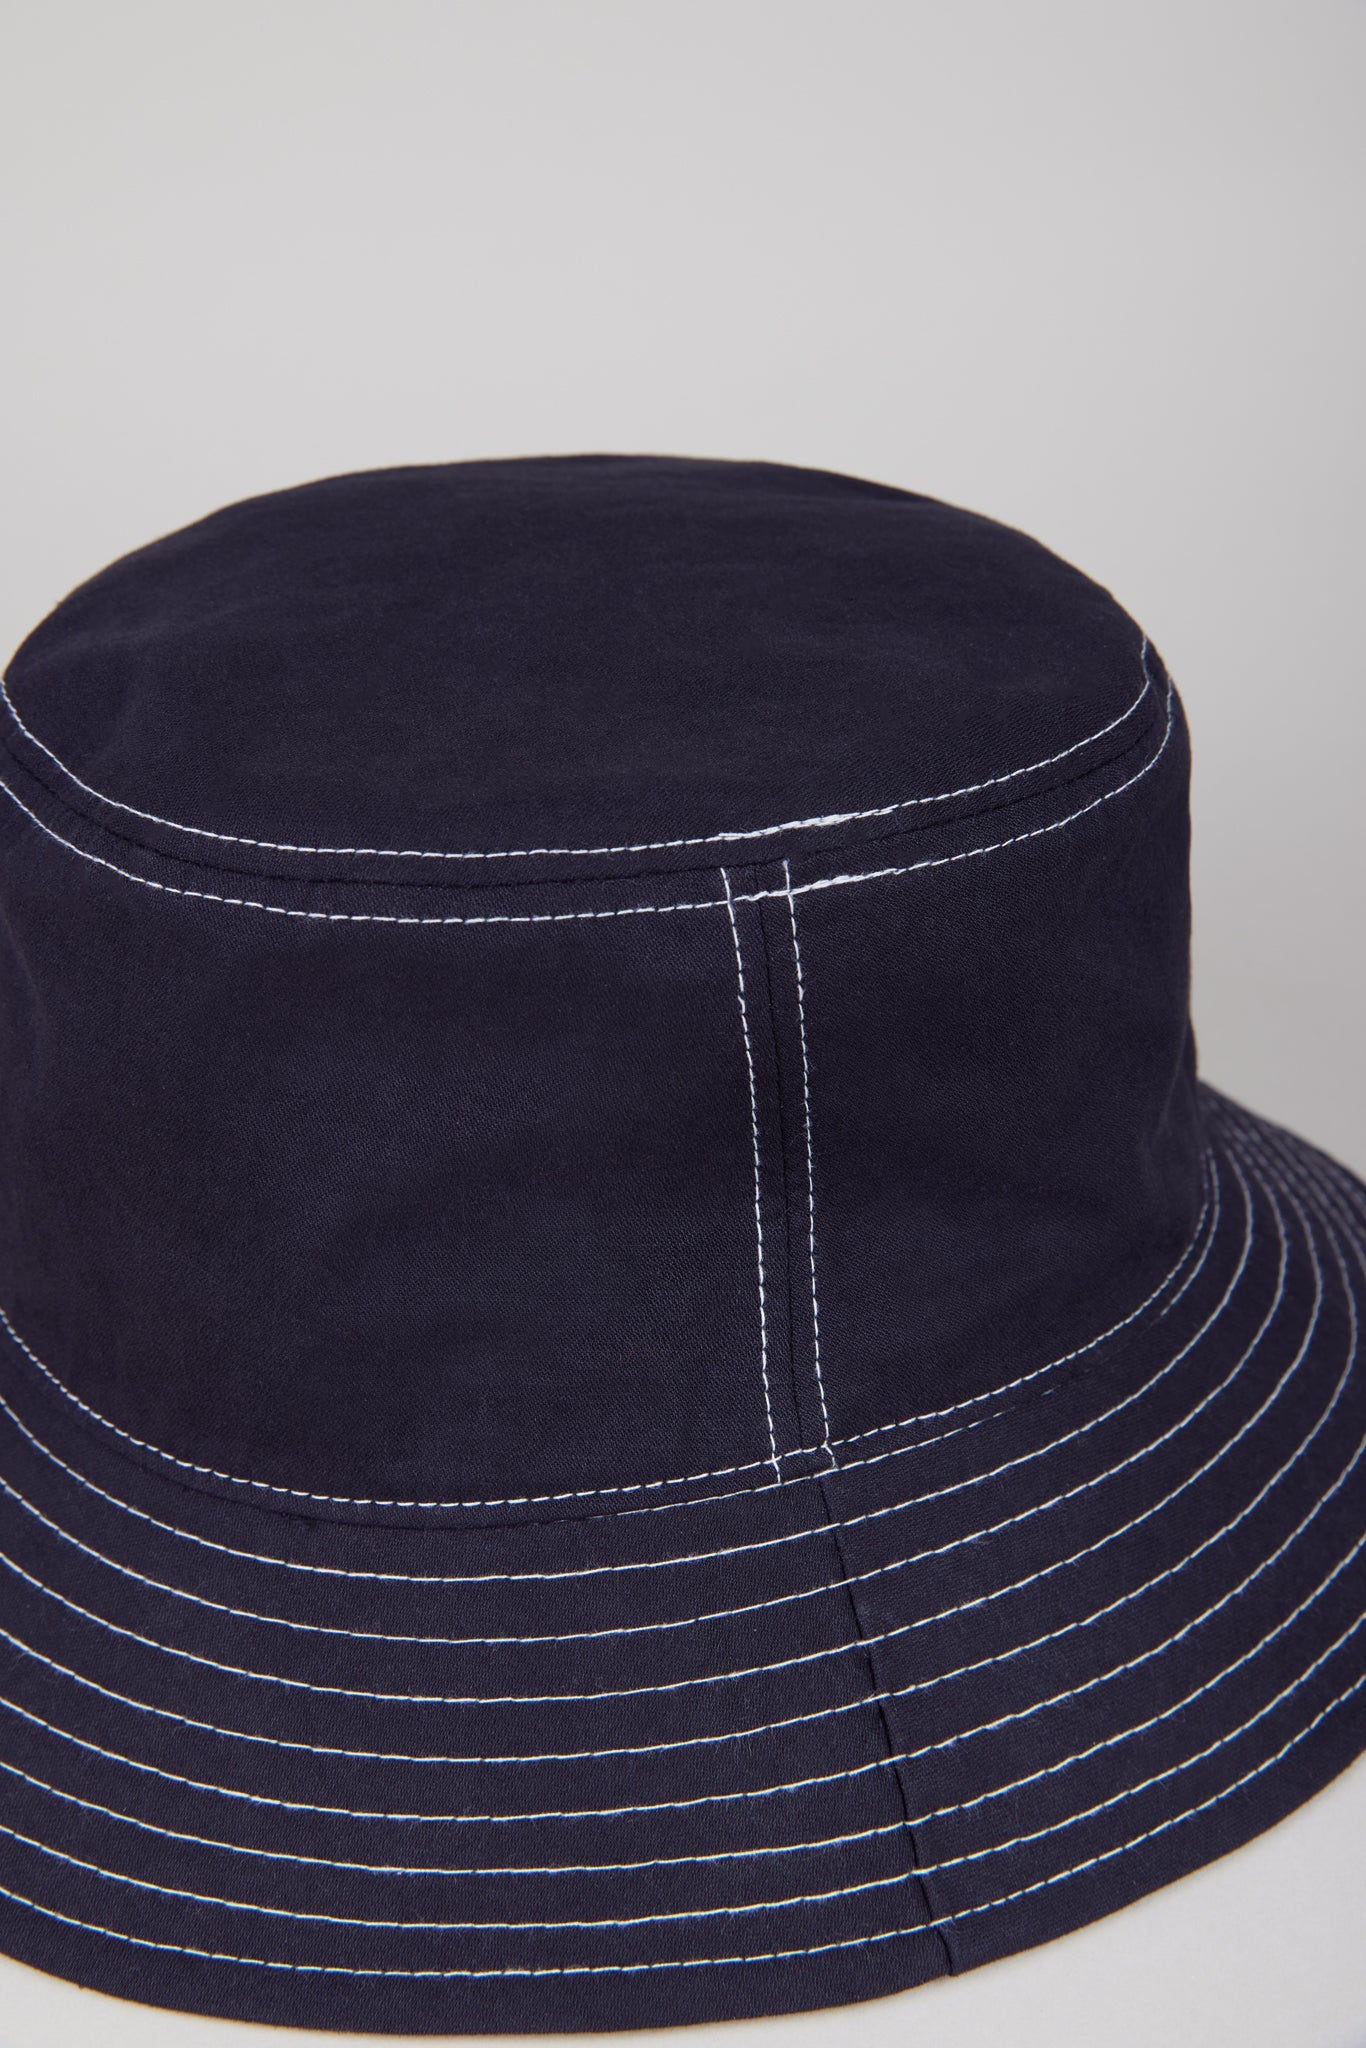 Black and white stitch bucket hat